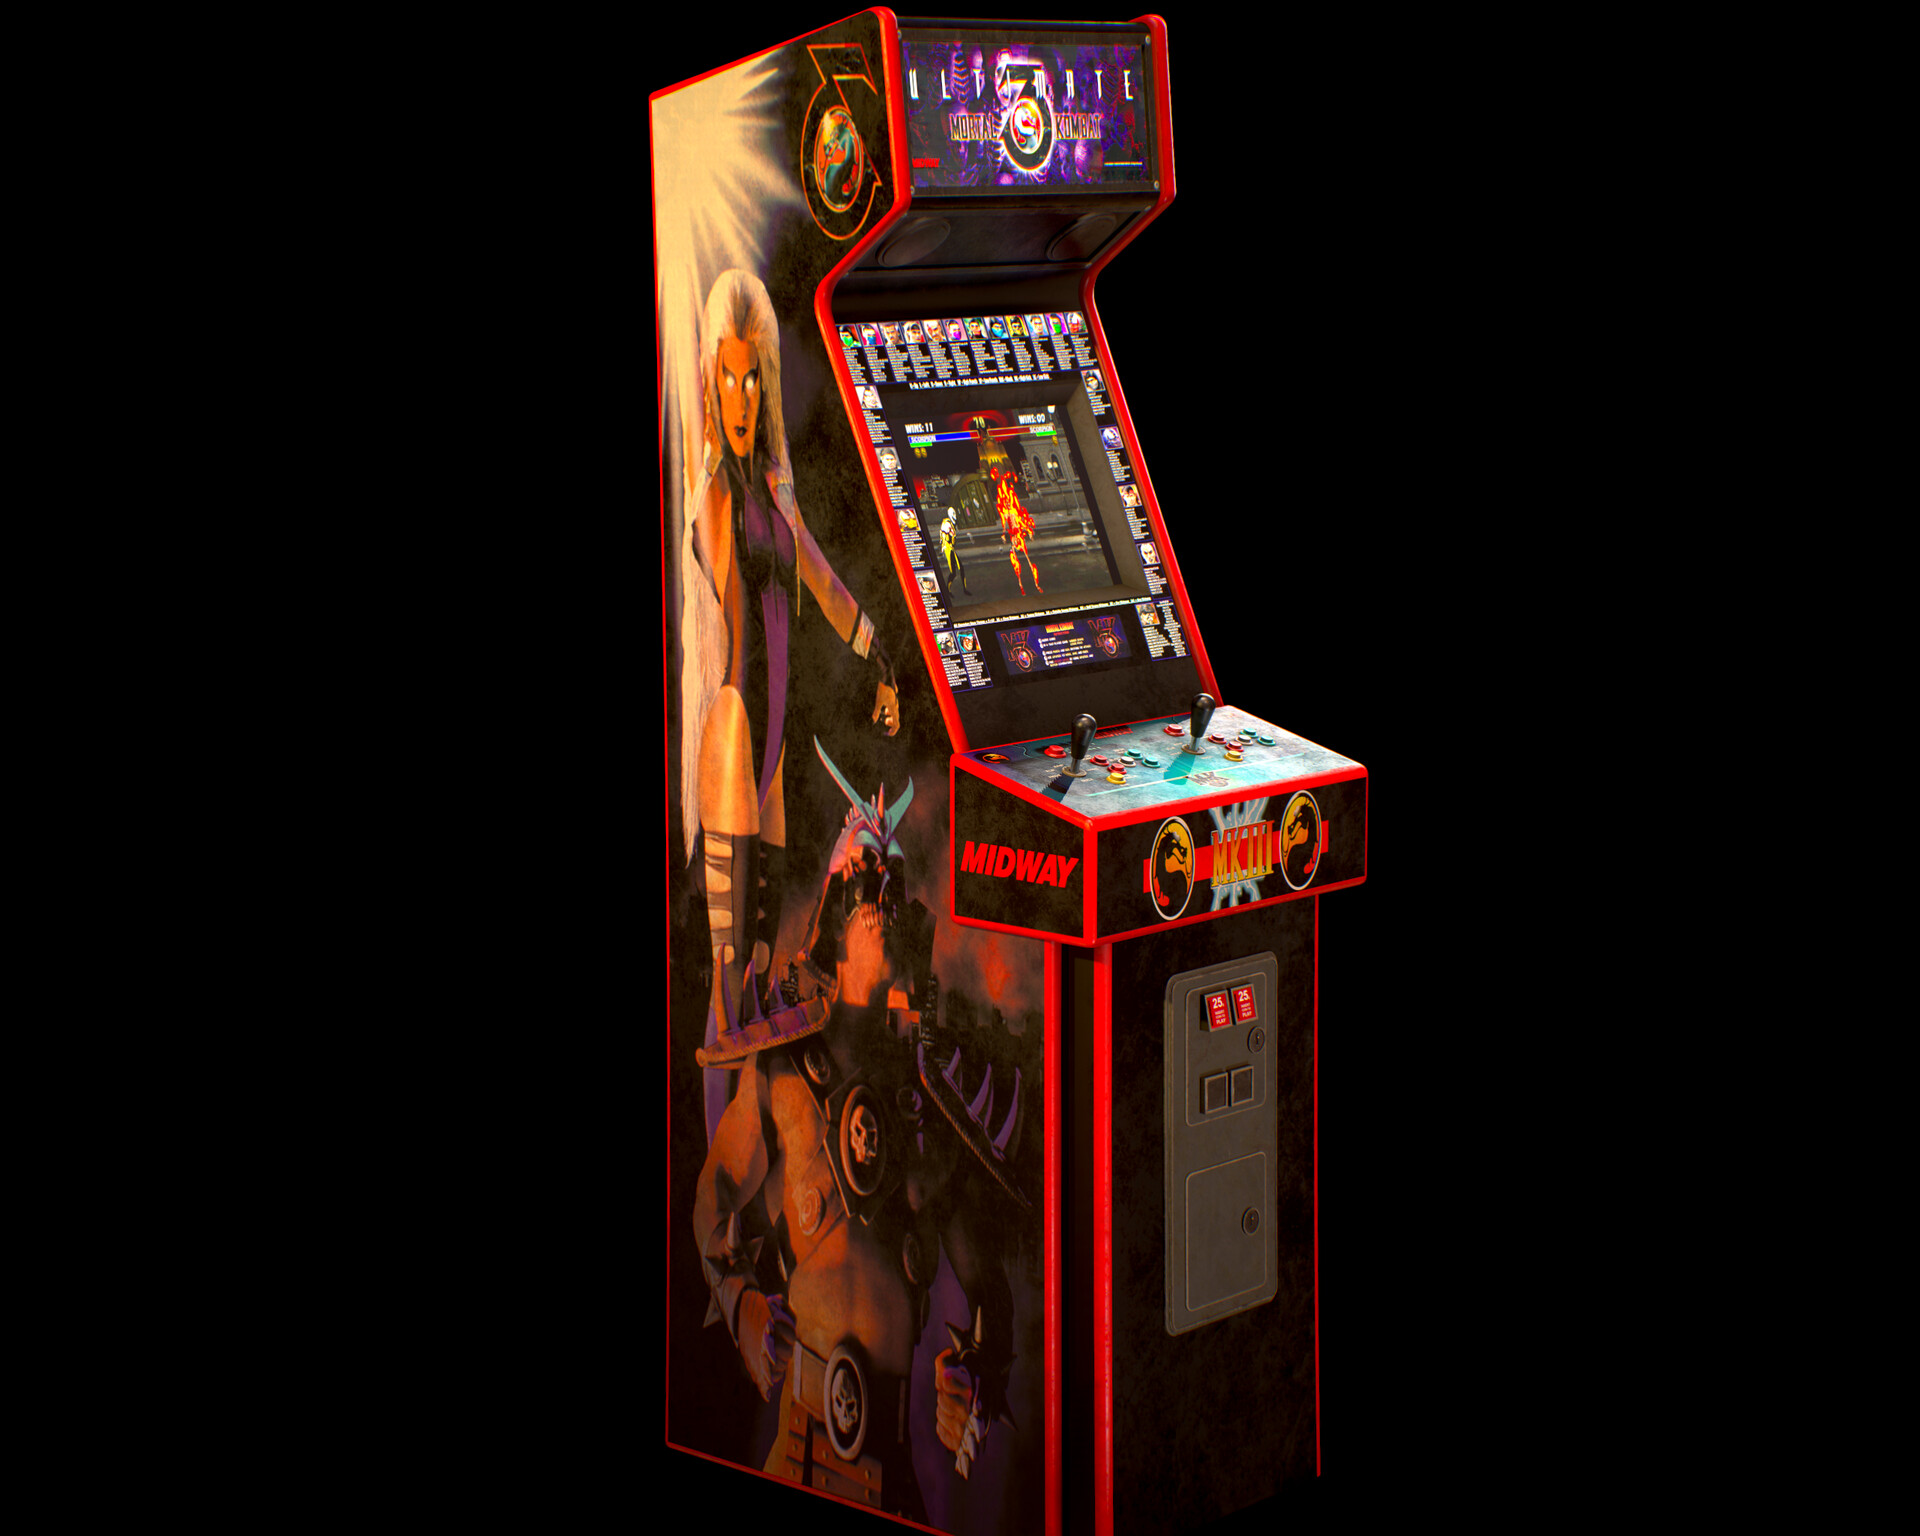 Rising liner игровой автомат играть игровые автоматы онлайн на деньги